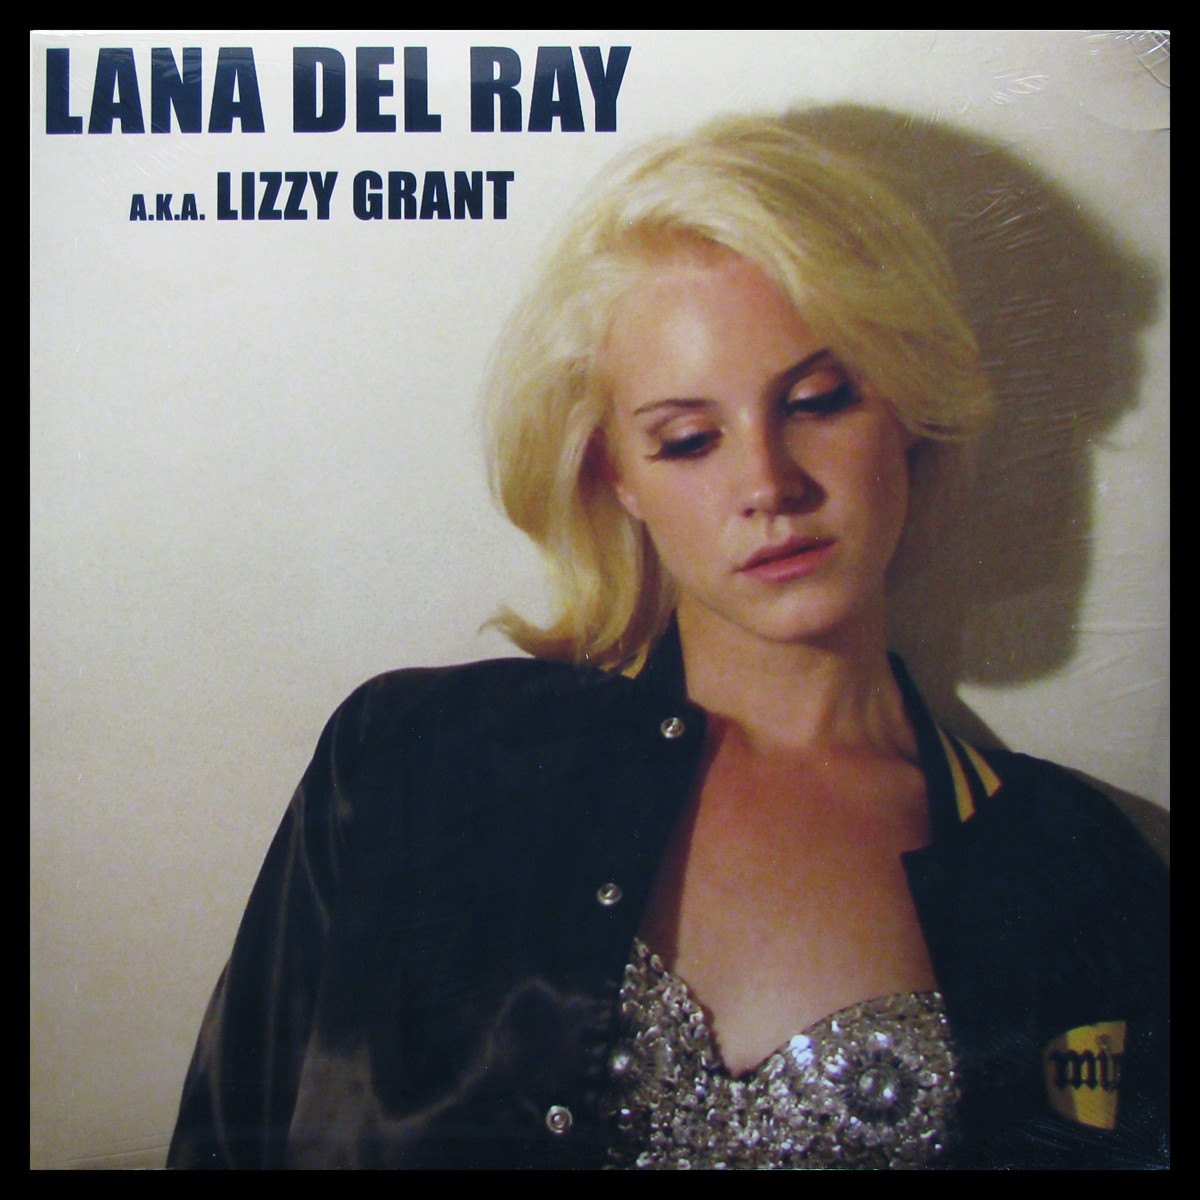 Lana Del Ray a.k.a. Lizzy Grant